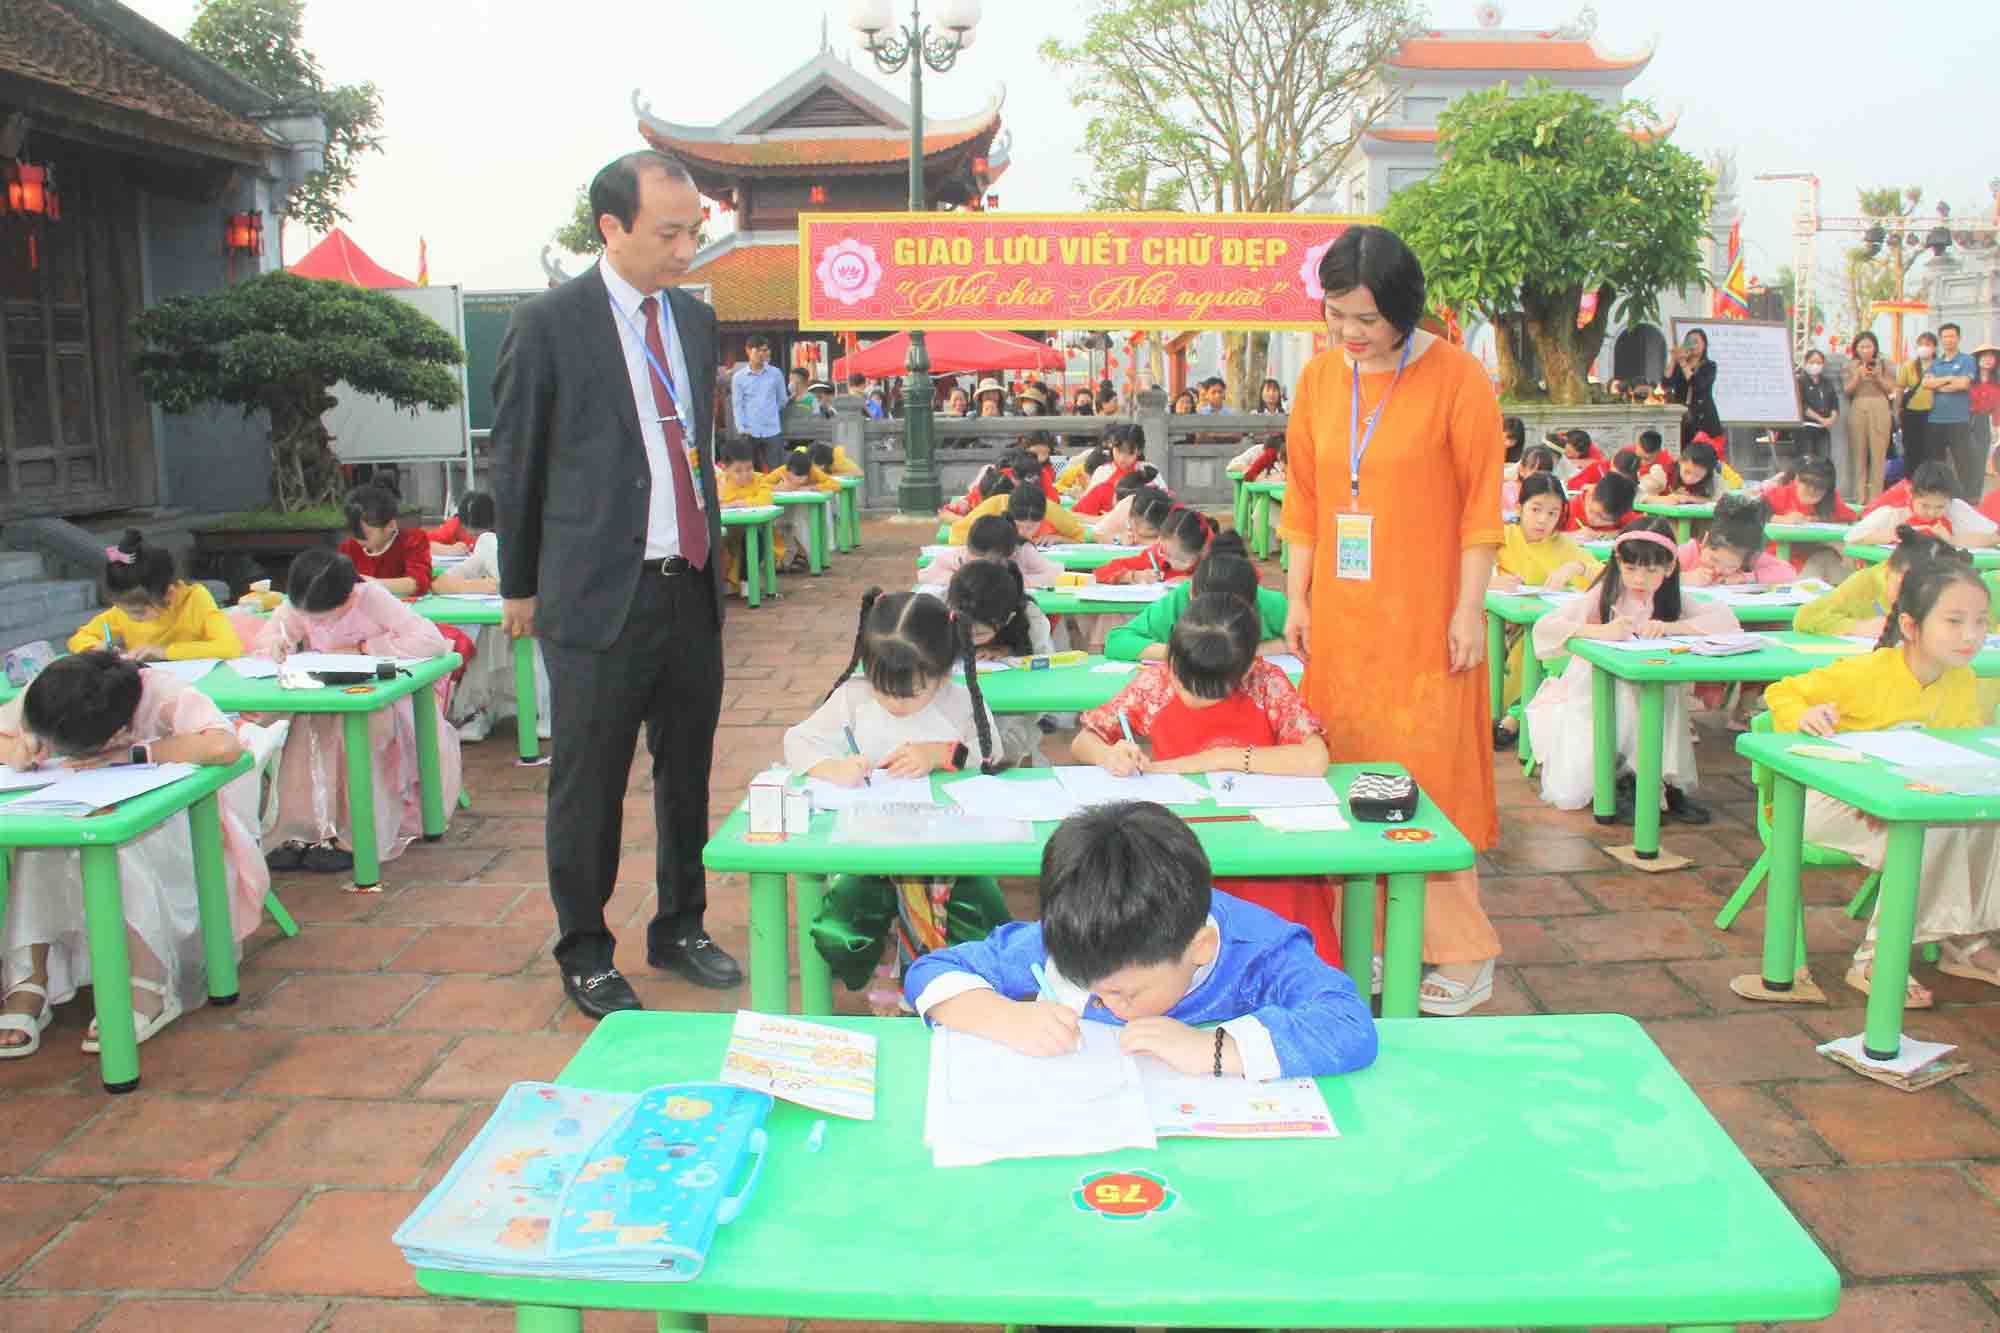 Các em học sinh thi viết chữ đẹp tại lễ hội Văn miếu Hà Tĩnh. Ảnh: Trần Tuấn.